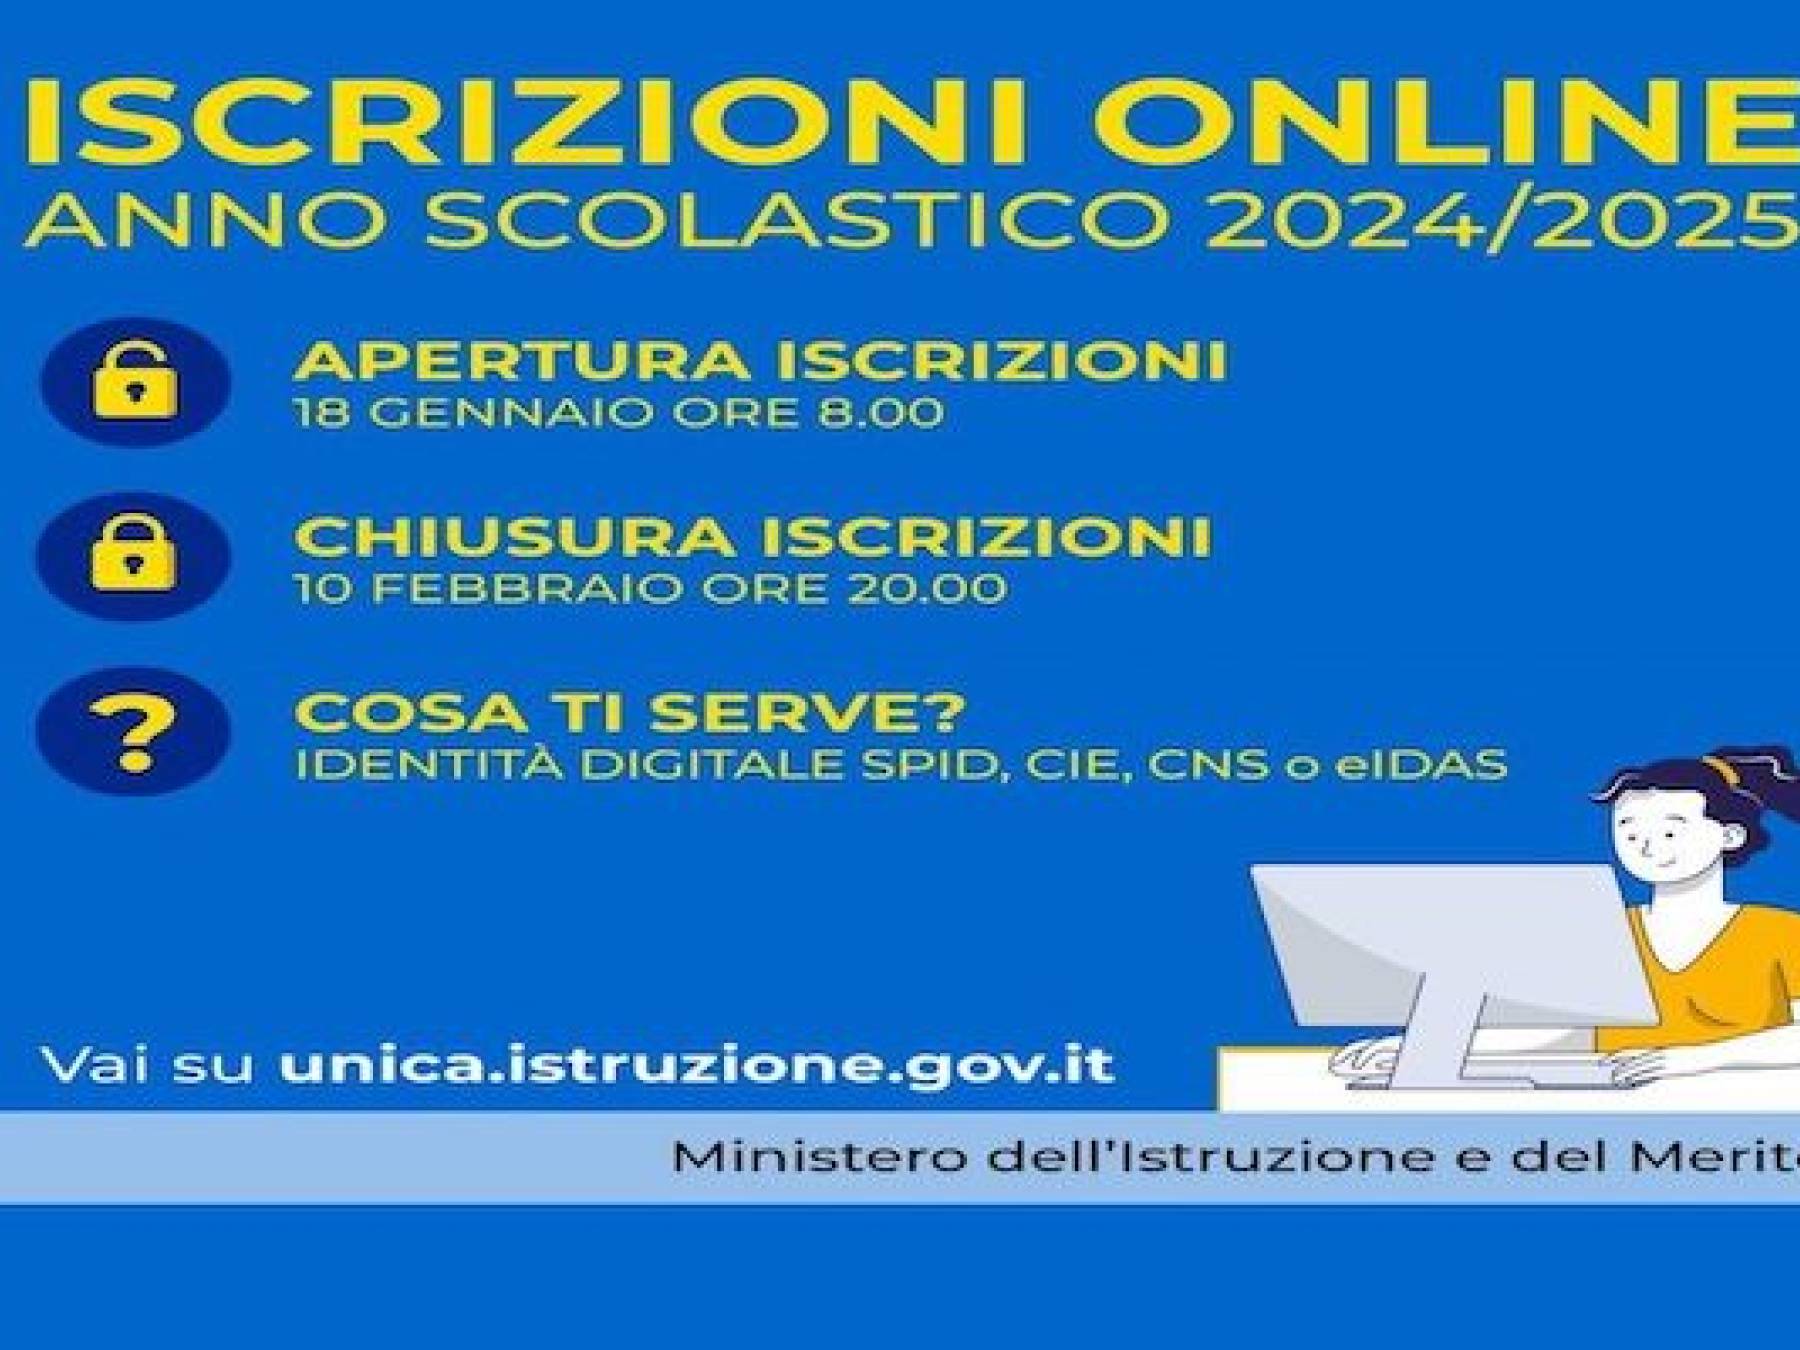 Iscrizioni on line anno scolastico 2024/2025